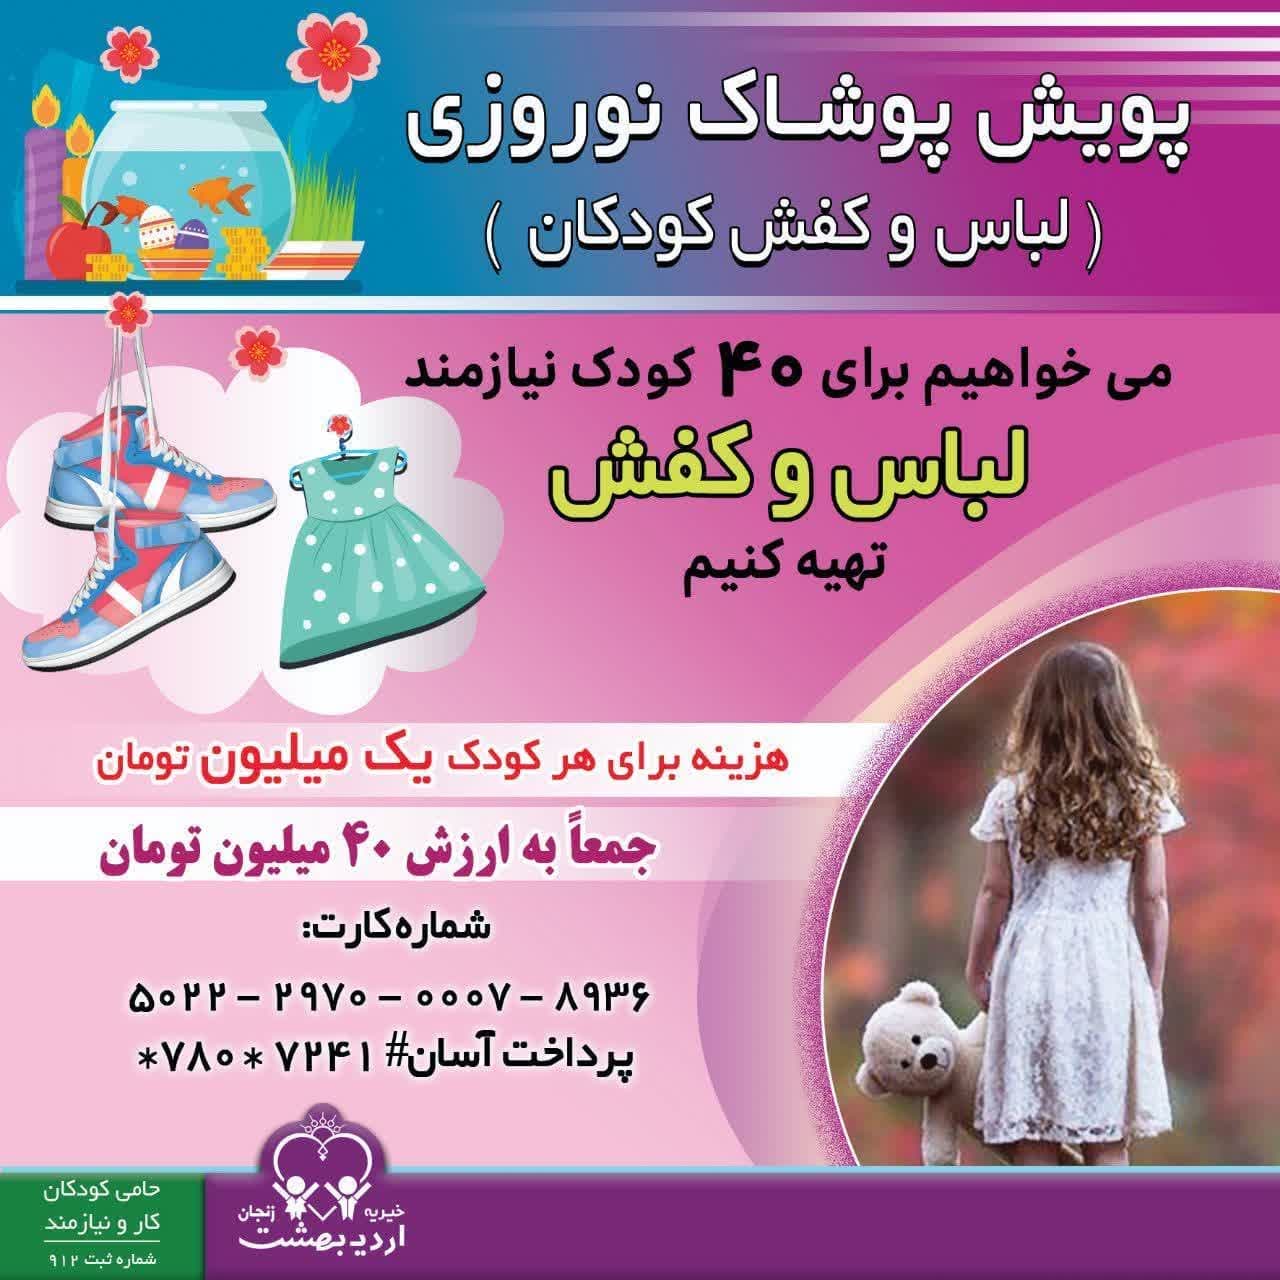 درباره این مقاله بیشتر بخوانید پویش تهیه لباس و کفش عیدنوروز برای ۴۰ کودک تحت پوشش خیریه اردیبهشت زنجان